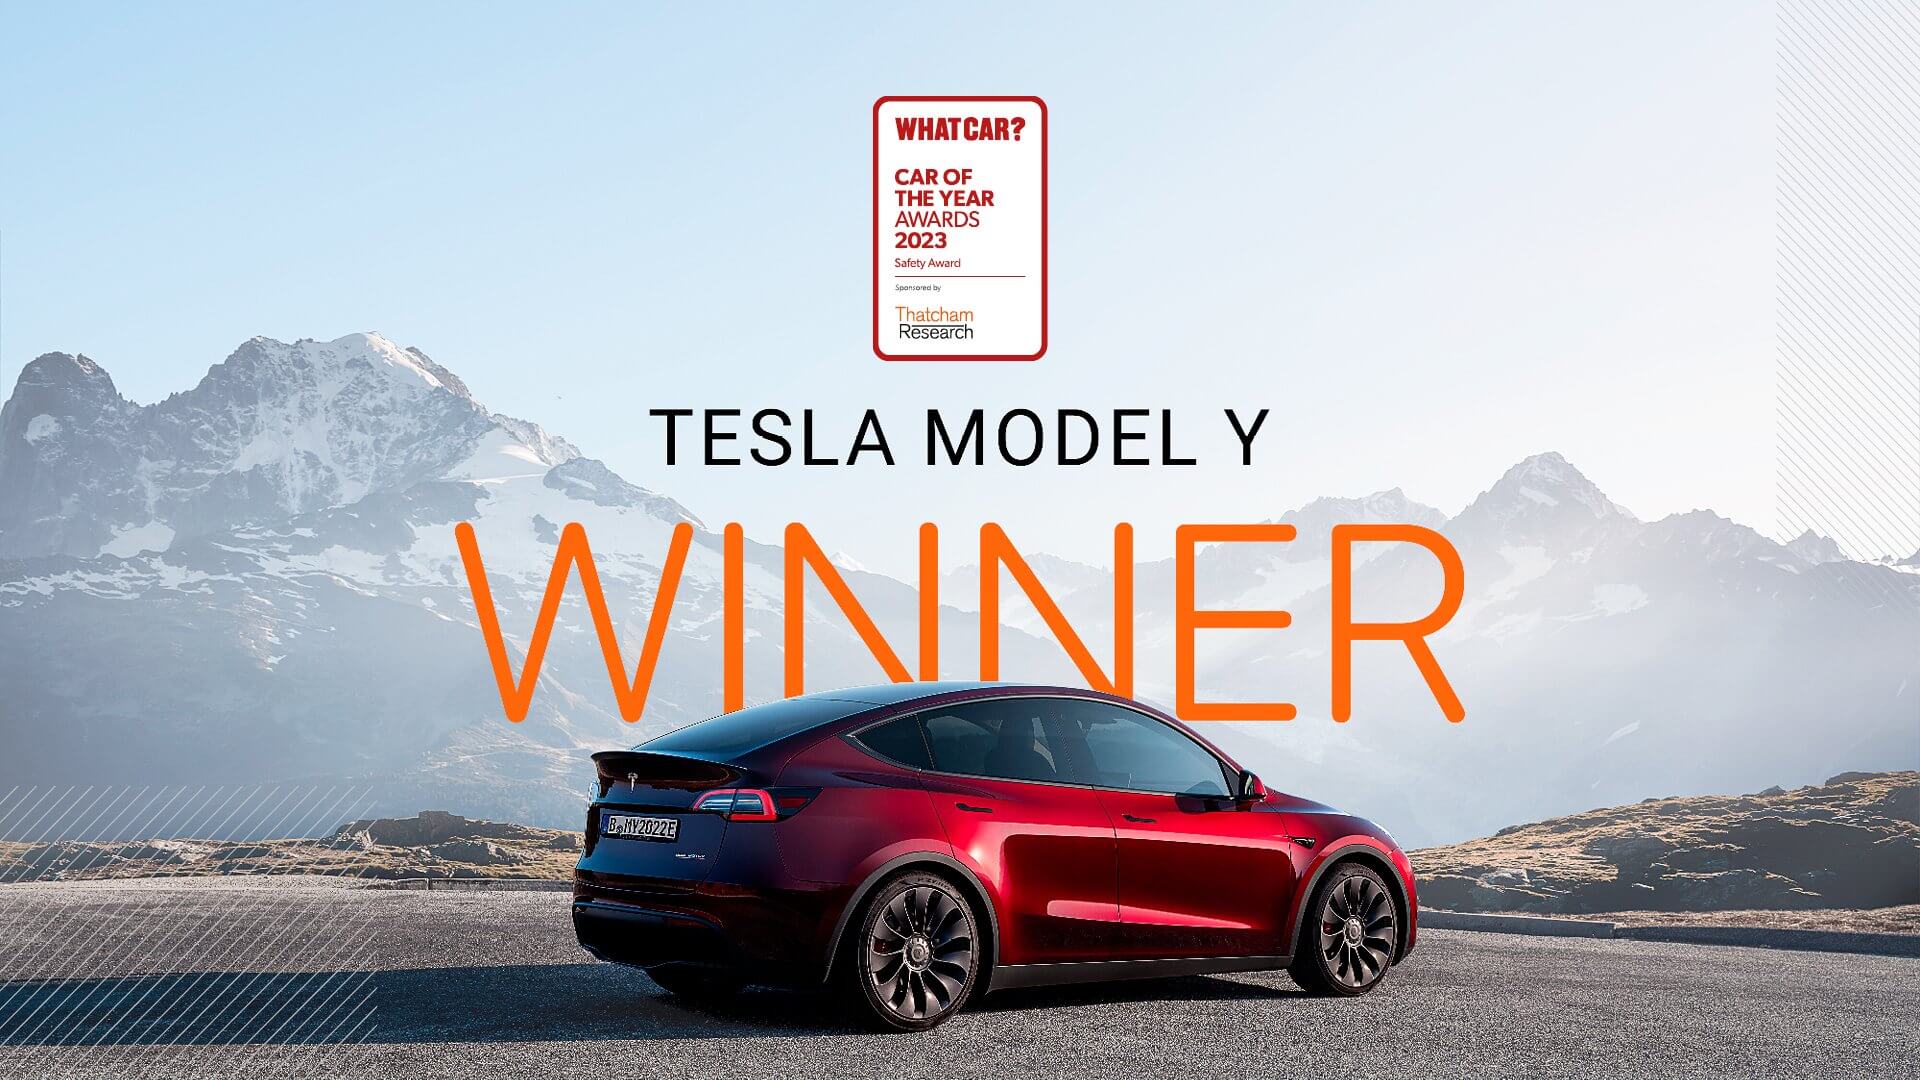 Tesla Model Y получает награду за безопасность от журнала What Car?